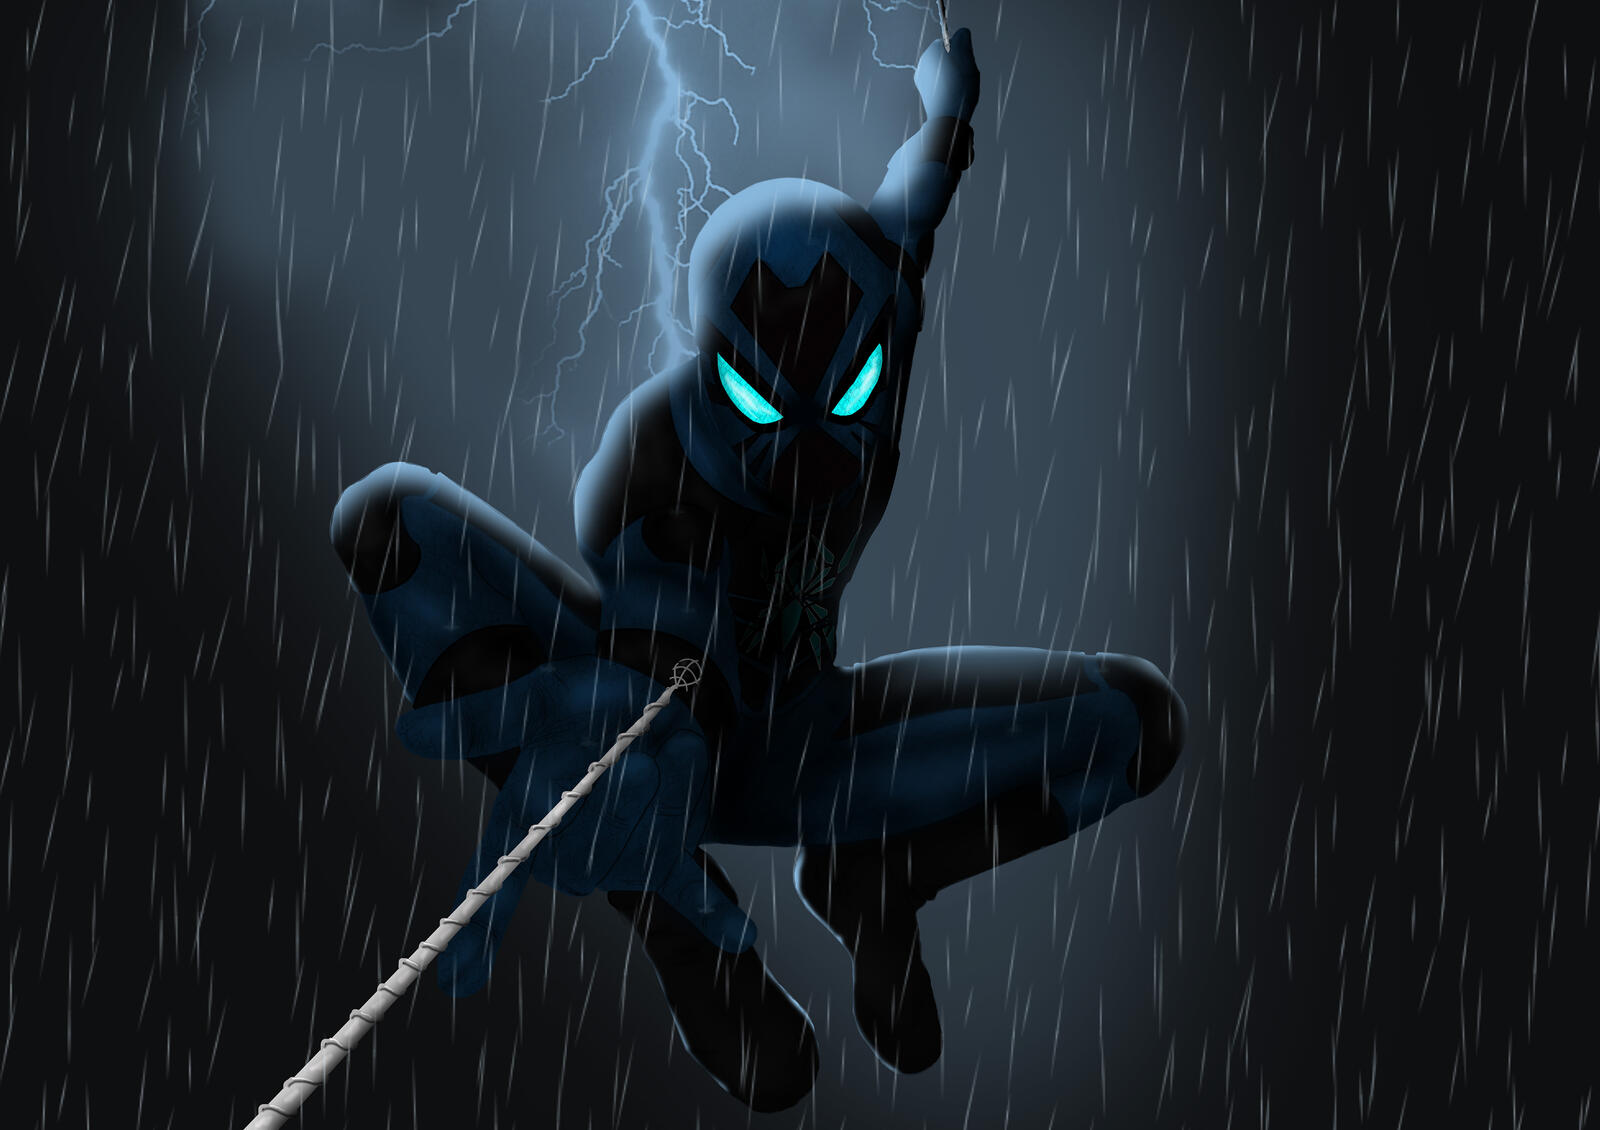 Бесплатное фото Картинка с черным человеком пауком в дождь